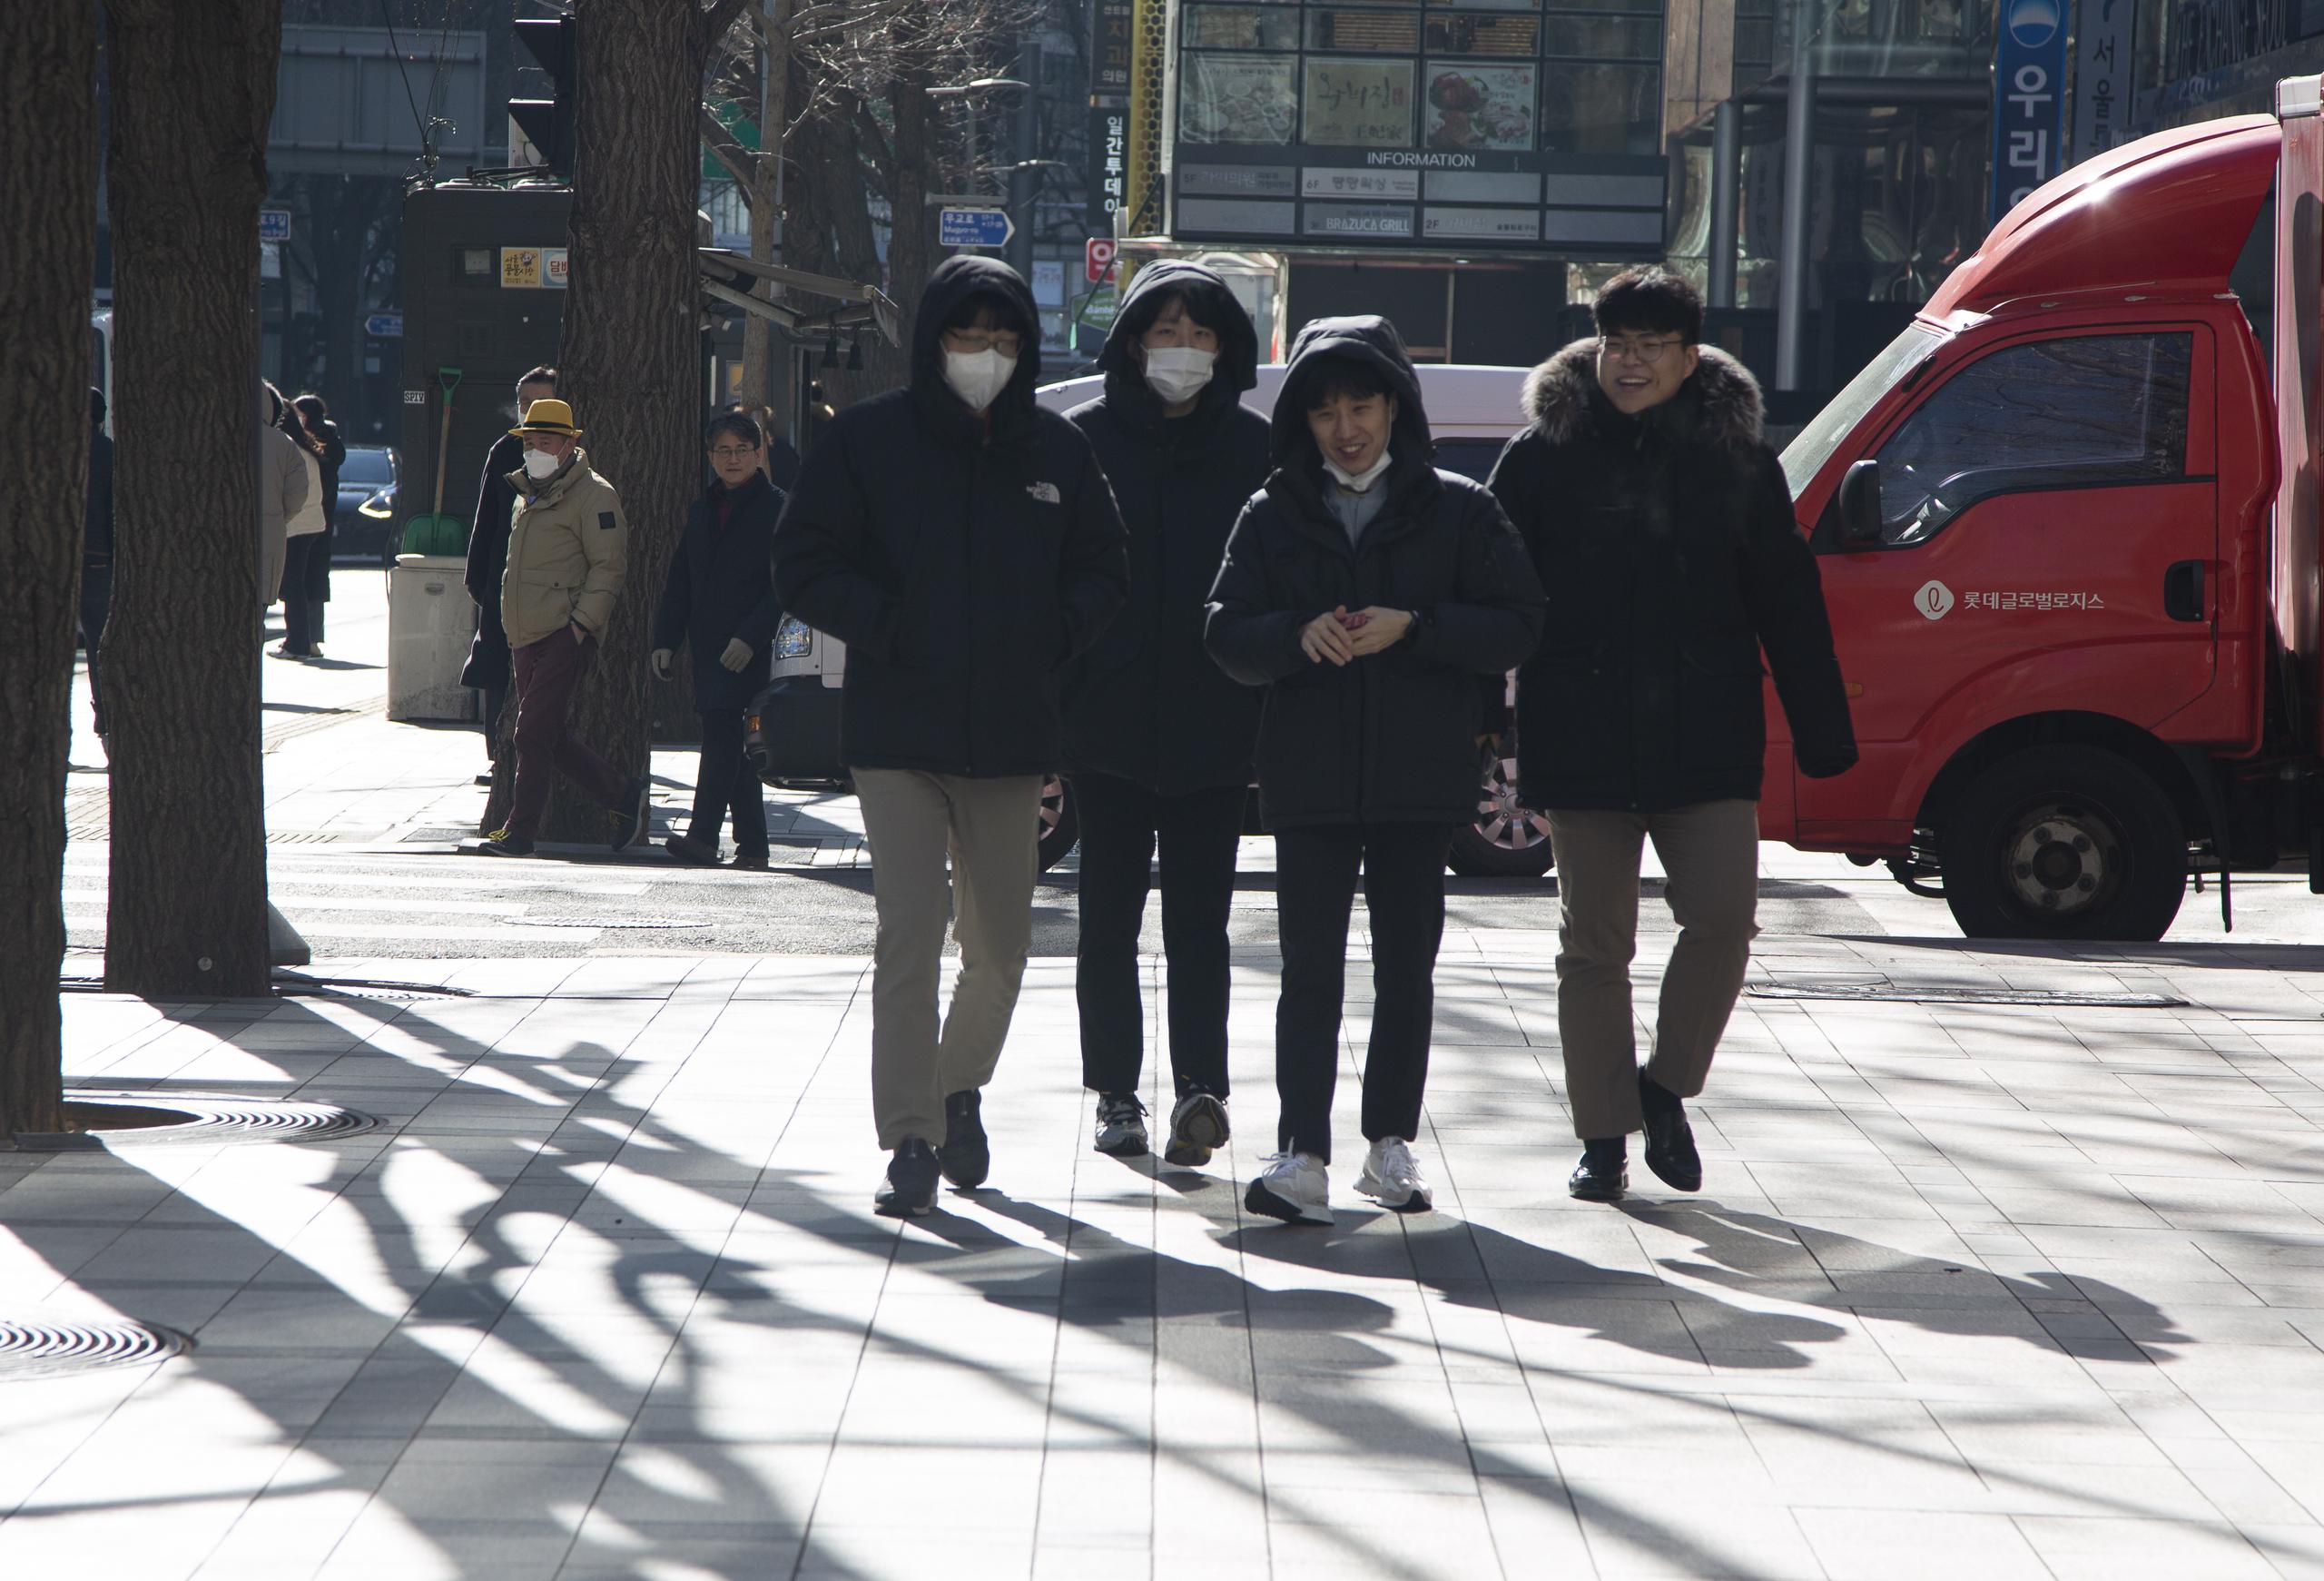 Desde el año 2000 la temperatura matinal en la capital surcoreana ha bajado de los 17 grados bajo cero sólo nueve días, en una muestra de la severidad del frente frío invernal en la península.